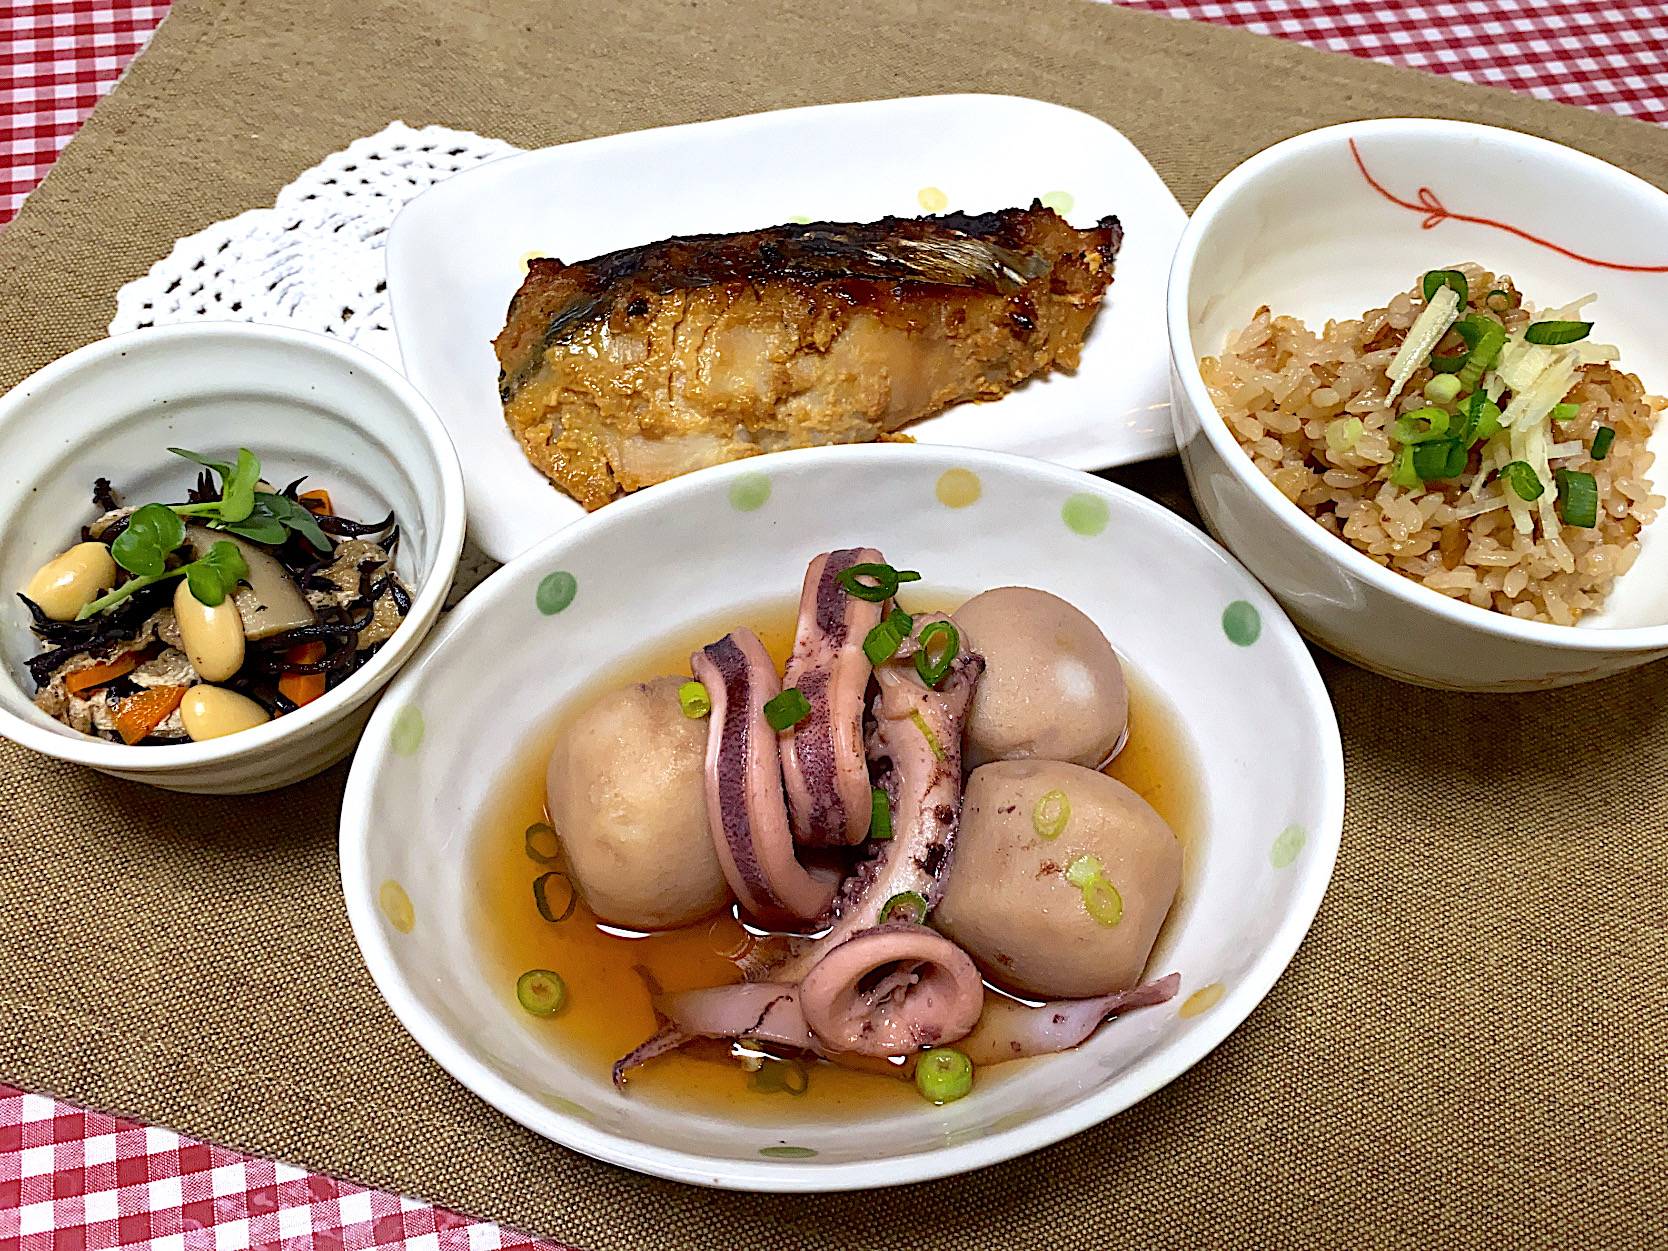 さわらの味噌焼き🐟
里芋とイカの煮物
ひじき煮
煮物出汁炊き込みご飯🍚